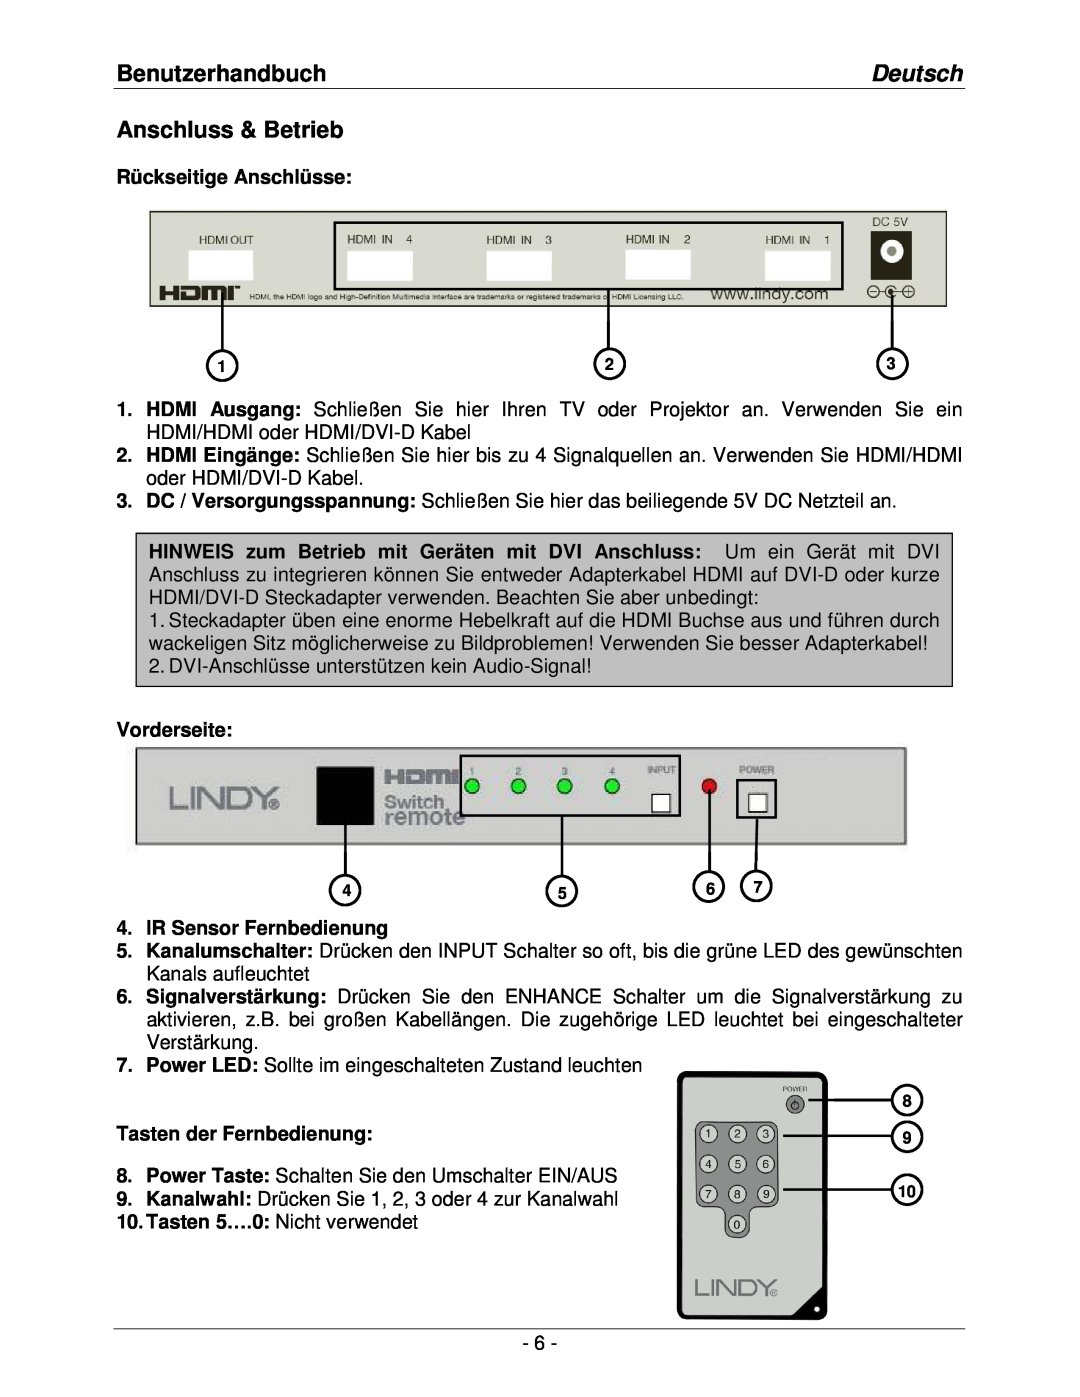 Lindy lindy no. 32594 user manual BenutzerhandbuchDeutsch Anschluss & Betrieb, Rückseitige Anschlüsse, Vorderseite 